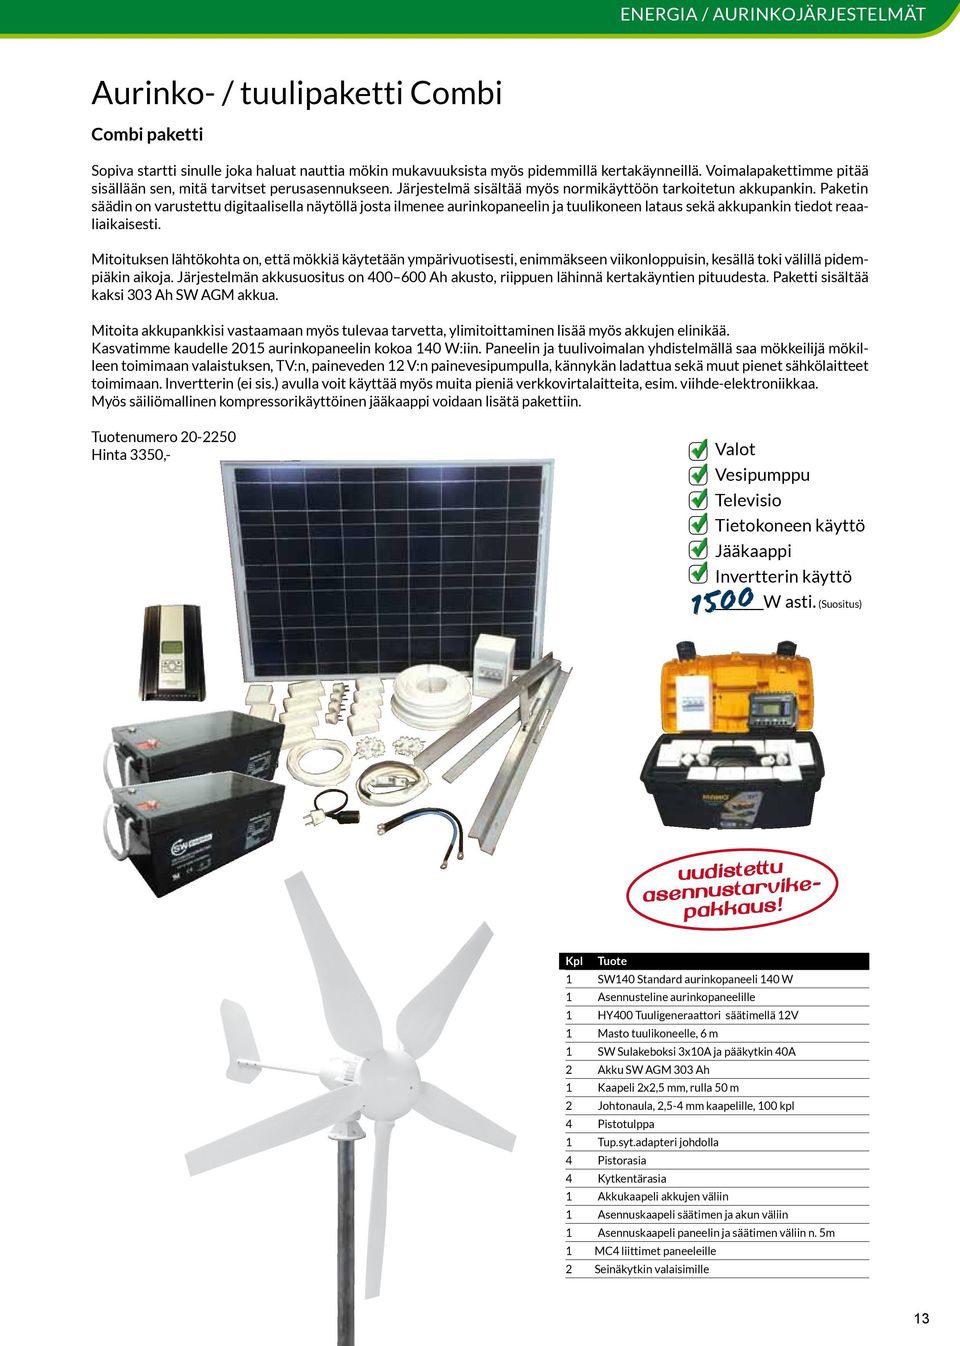 Paketin säädin on varustettu digitaalisella näytöllä josta ilmenee aurinkopaneelin ja tuulikoneen lataus sekä akkupankin tiedot reaaliaikaisesti.